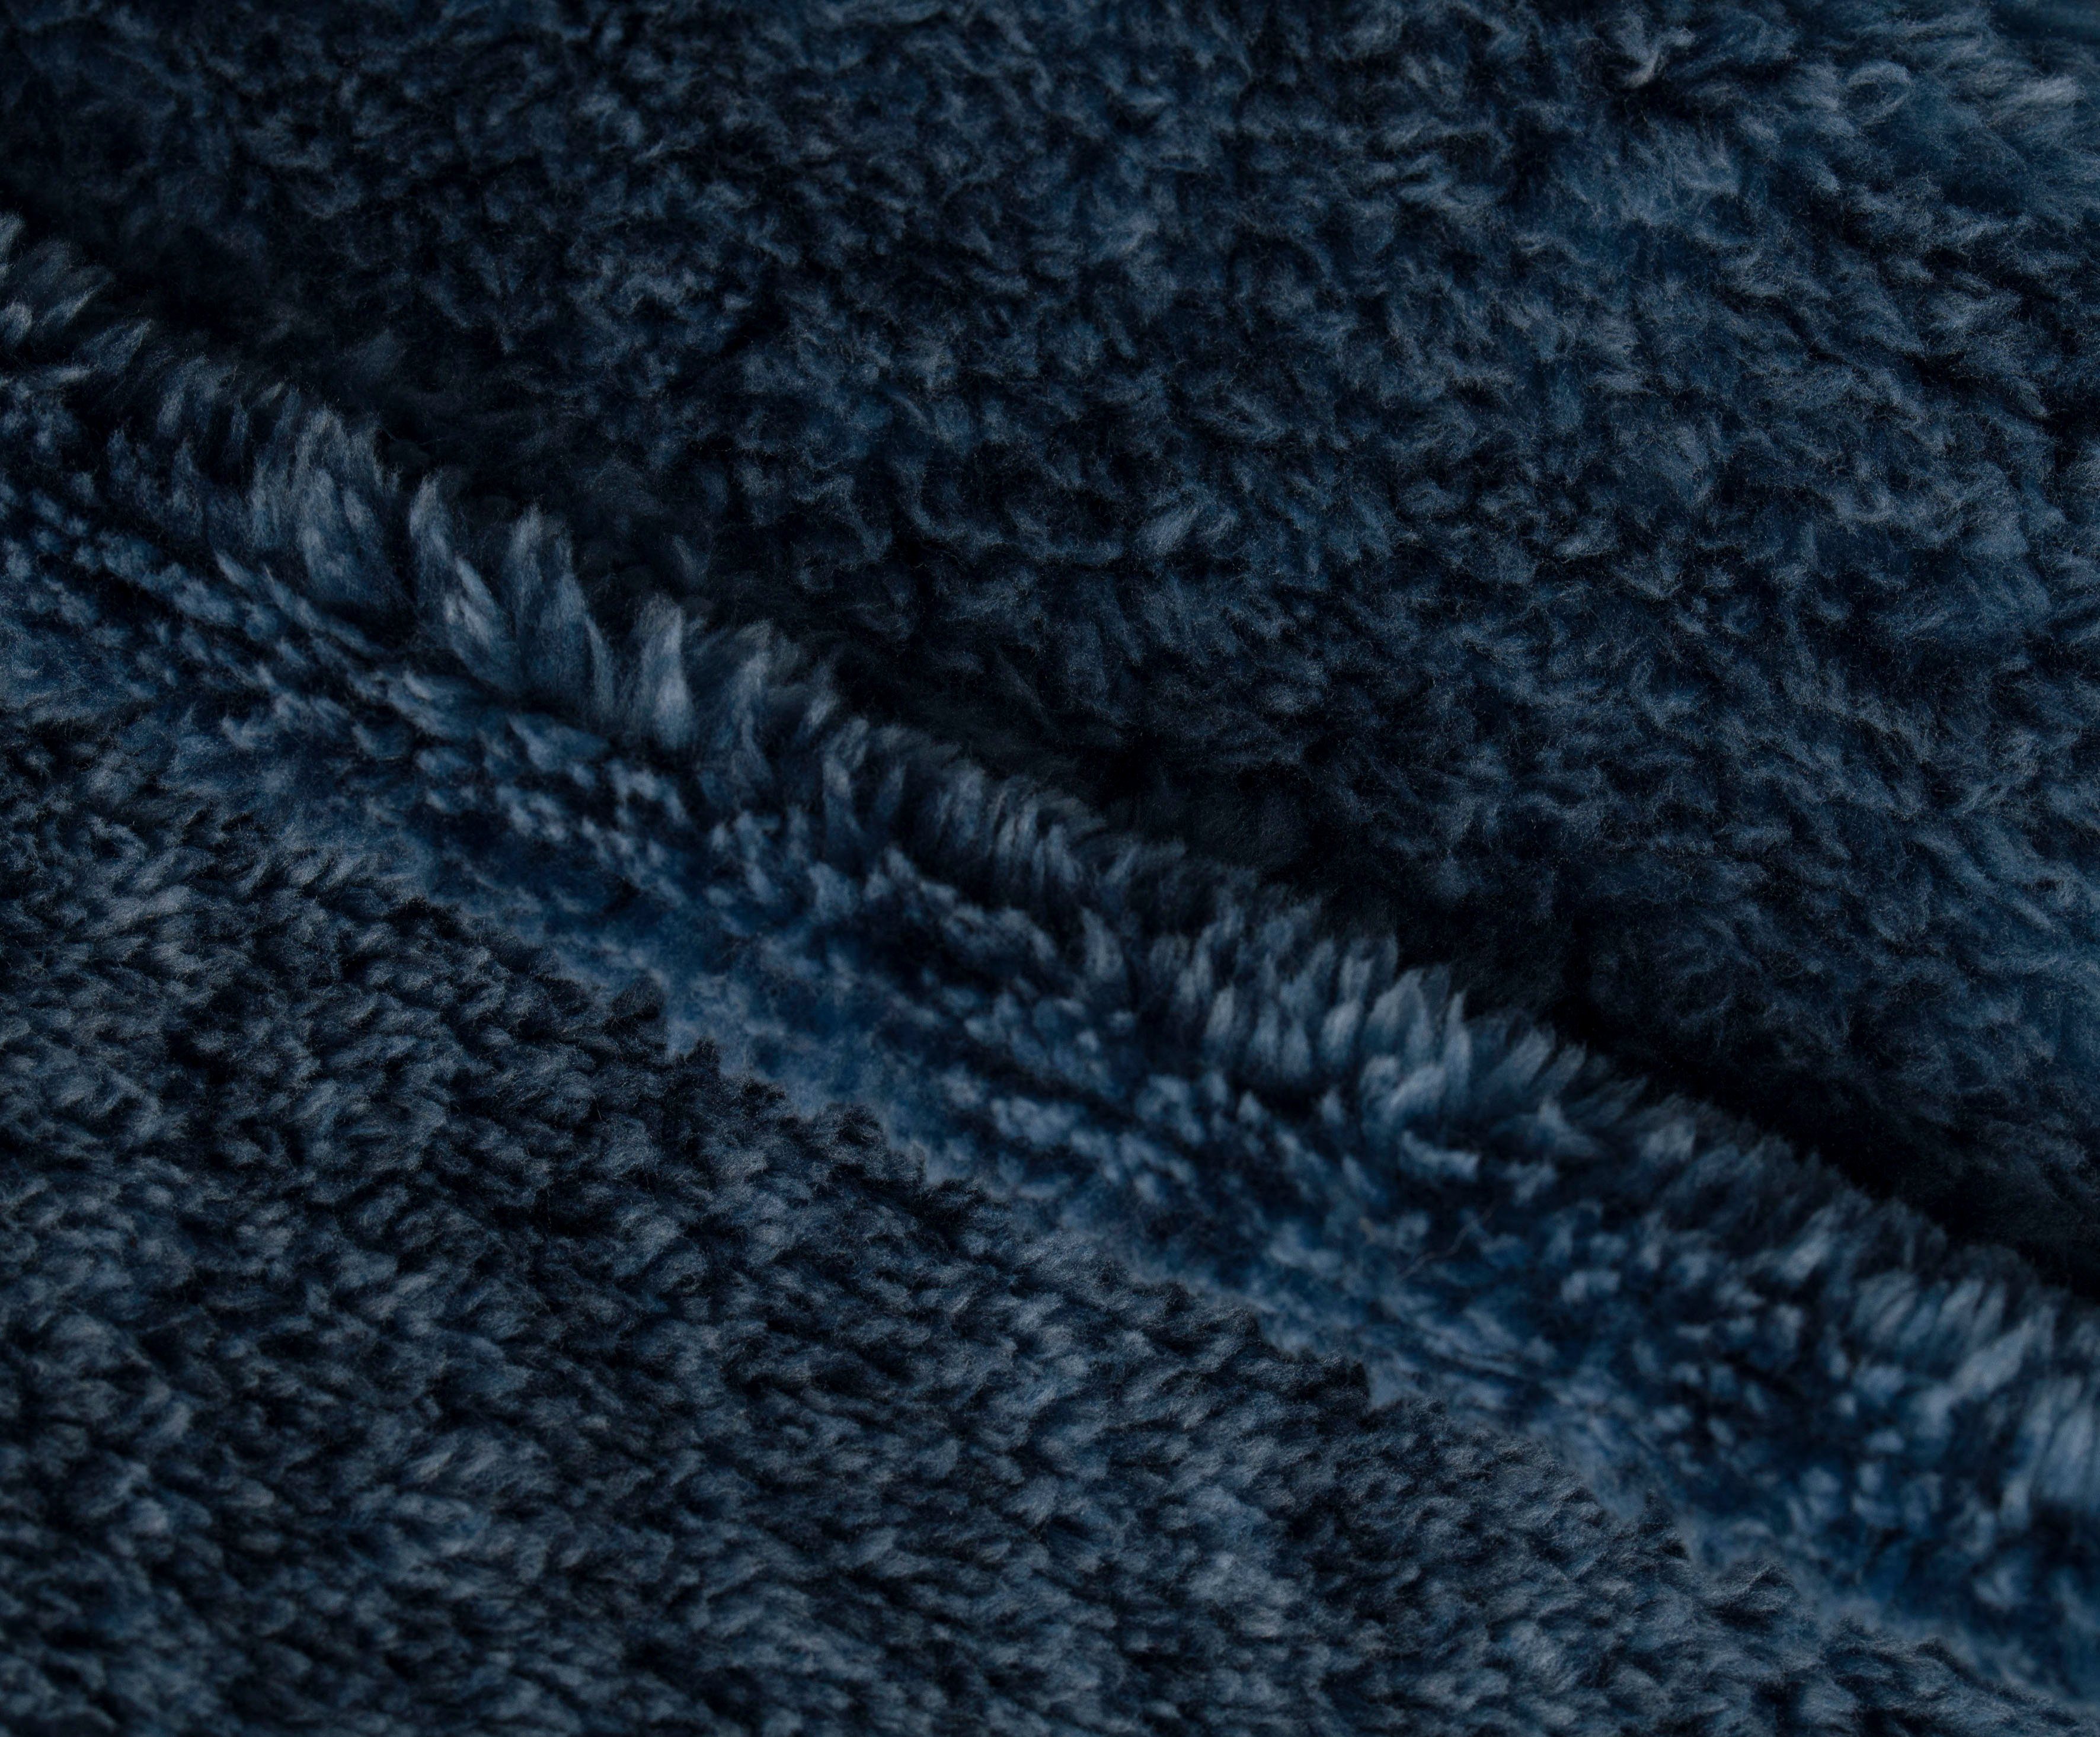 Wohndecke Alaska, Gözze, marmorierte dunkelblau Optik, kuschelig